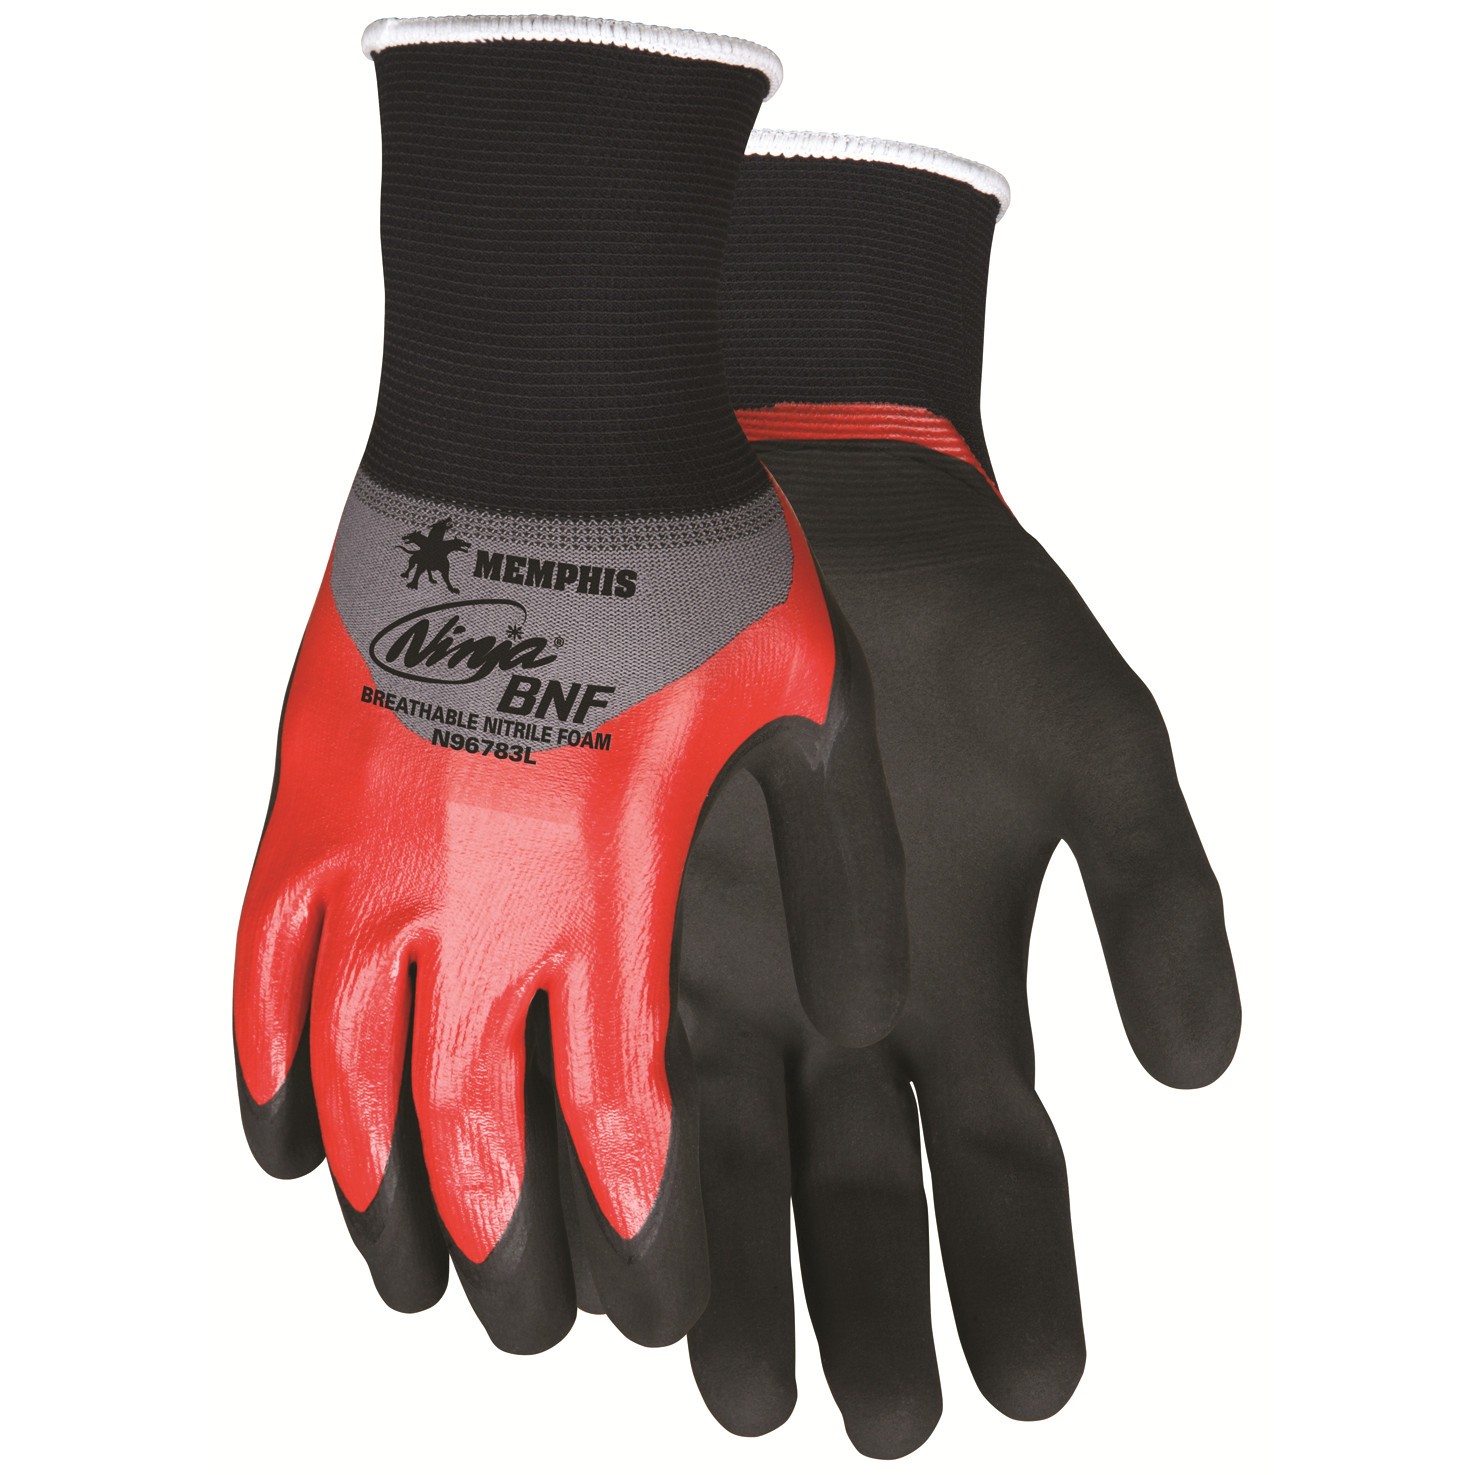 N96783 - MCR Safety Memphis Ninja® BNF 18 Gauge Nylon/Spandex, Over Knuckle Nitrile Dip, black BNF palm & finger 